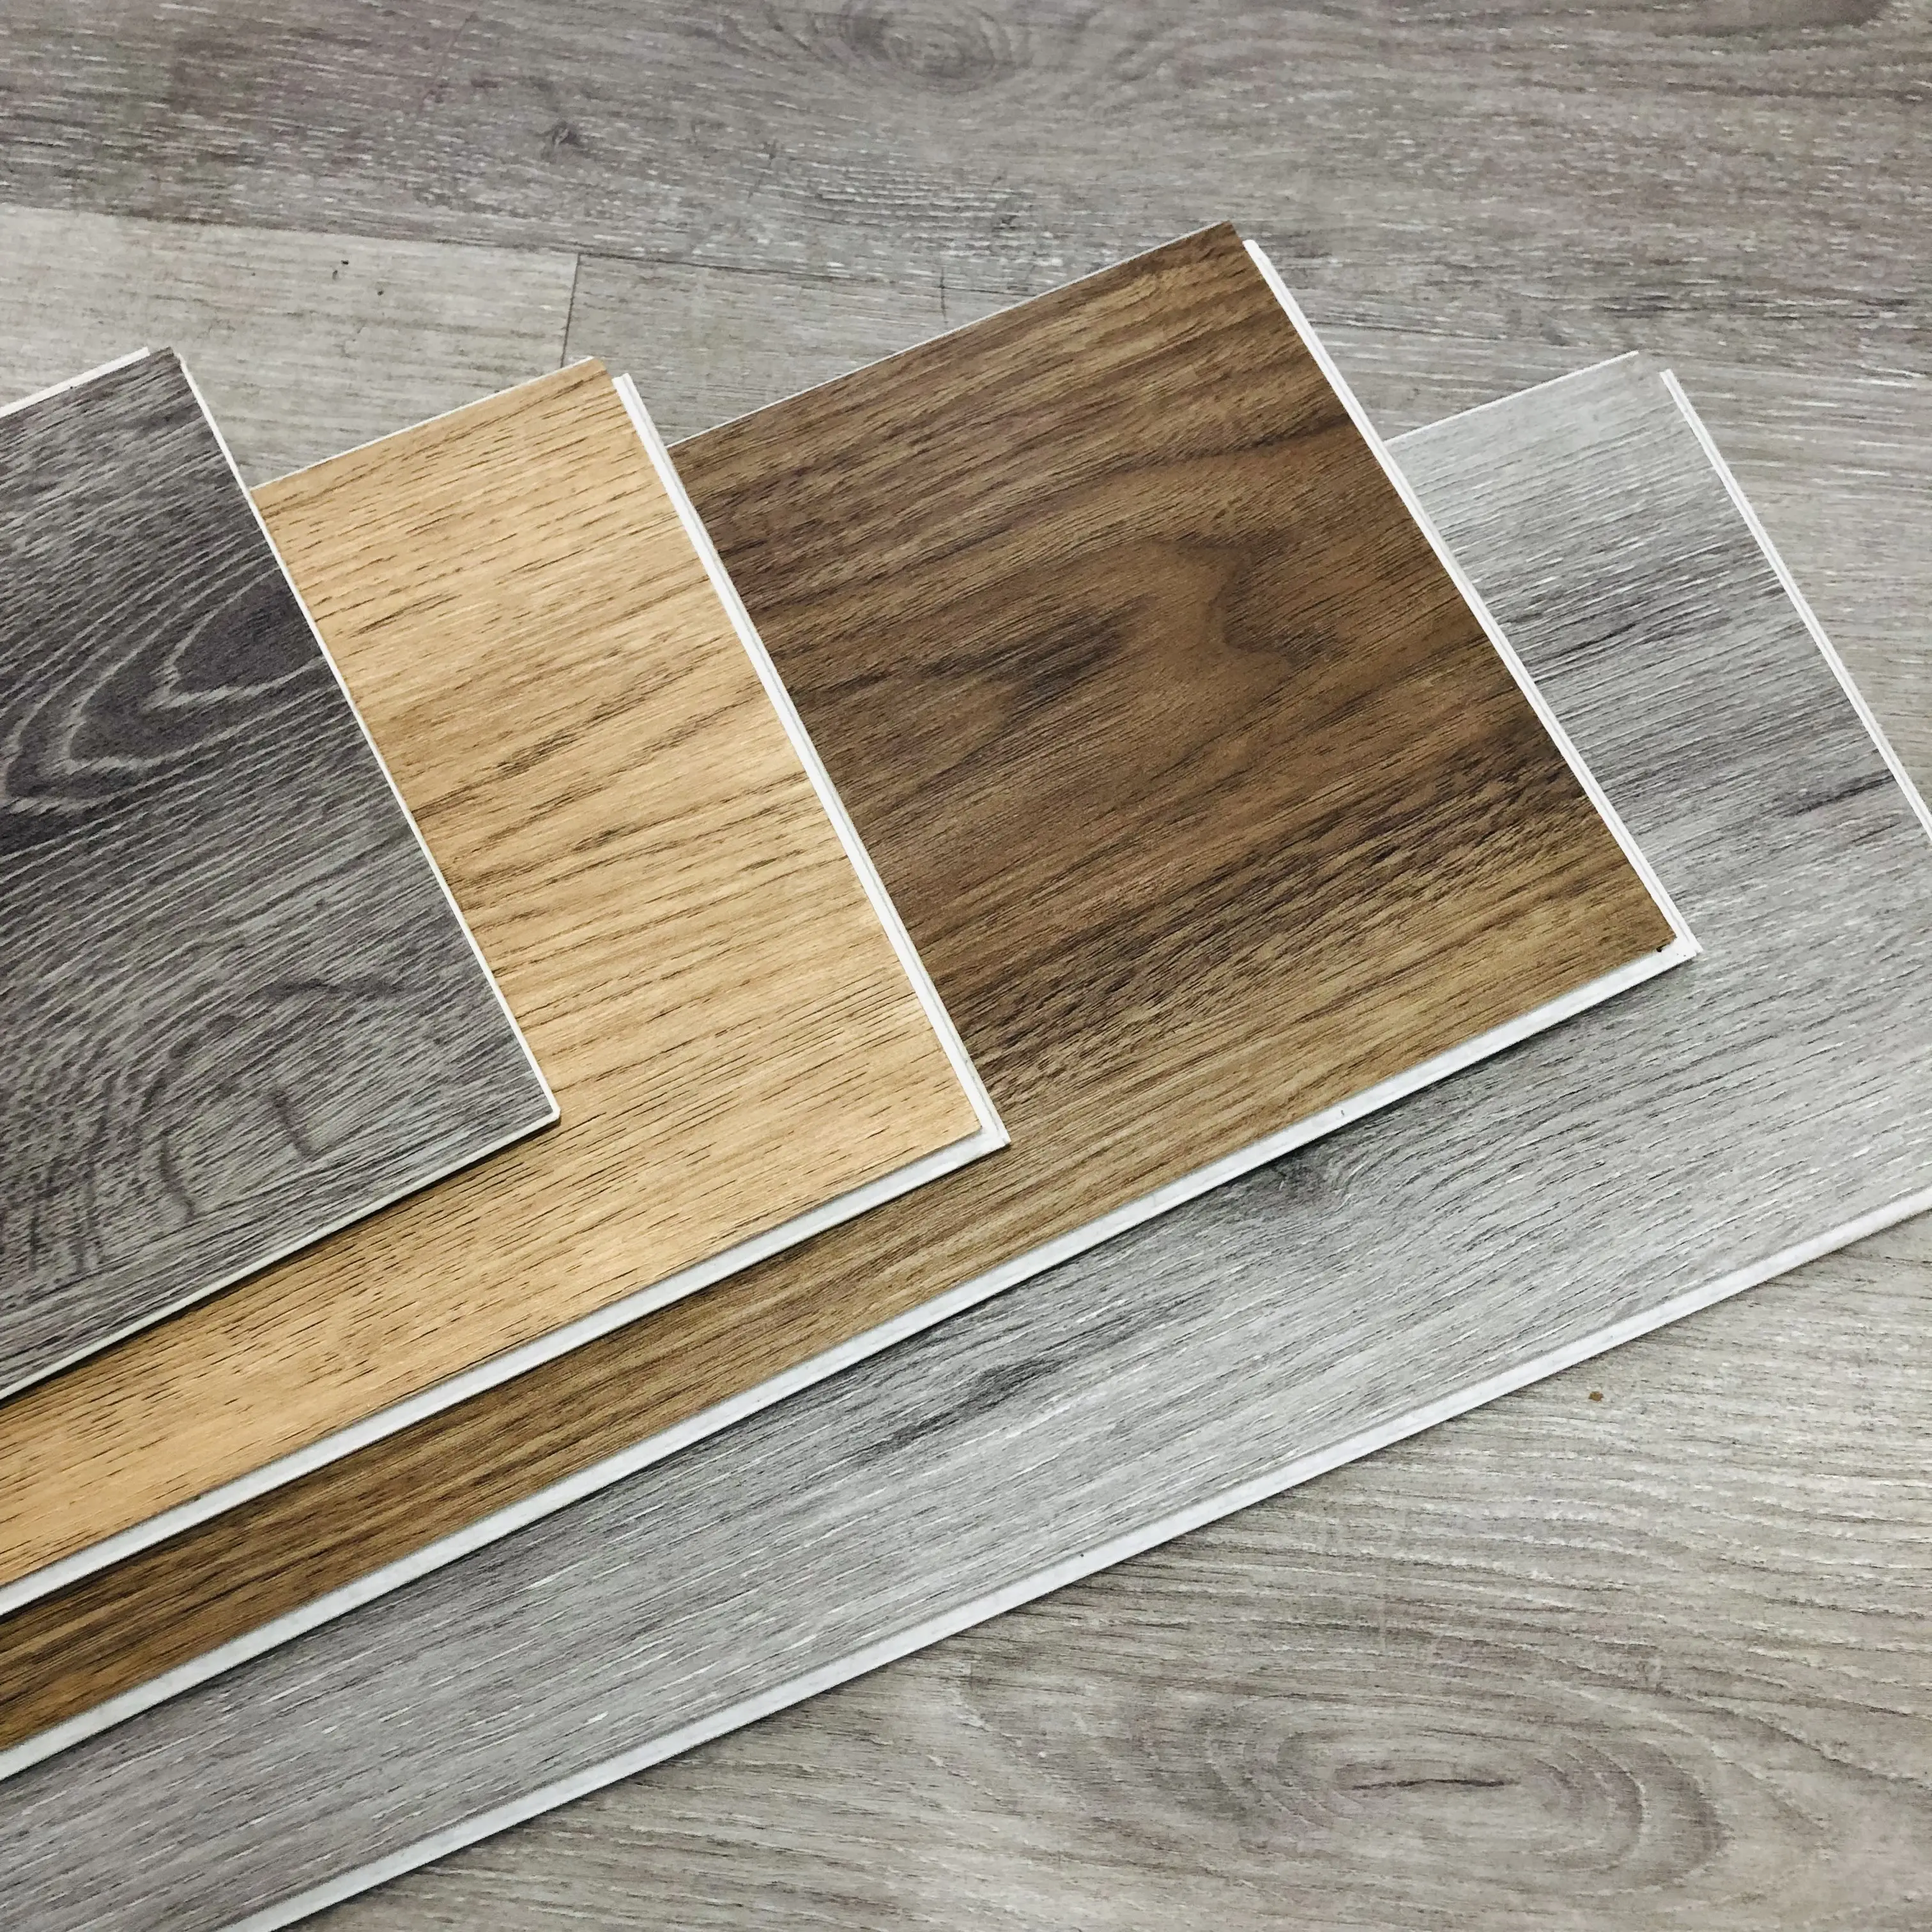 Ommercial-Tablón de madera inyl lank para decoración del hogar, tablón de vinilo resistente